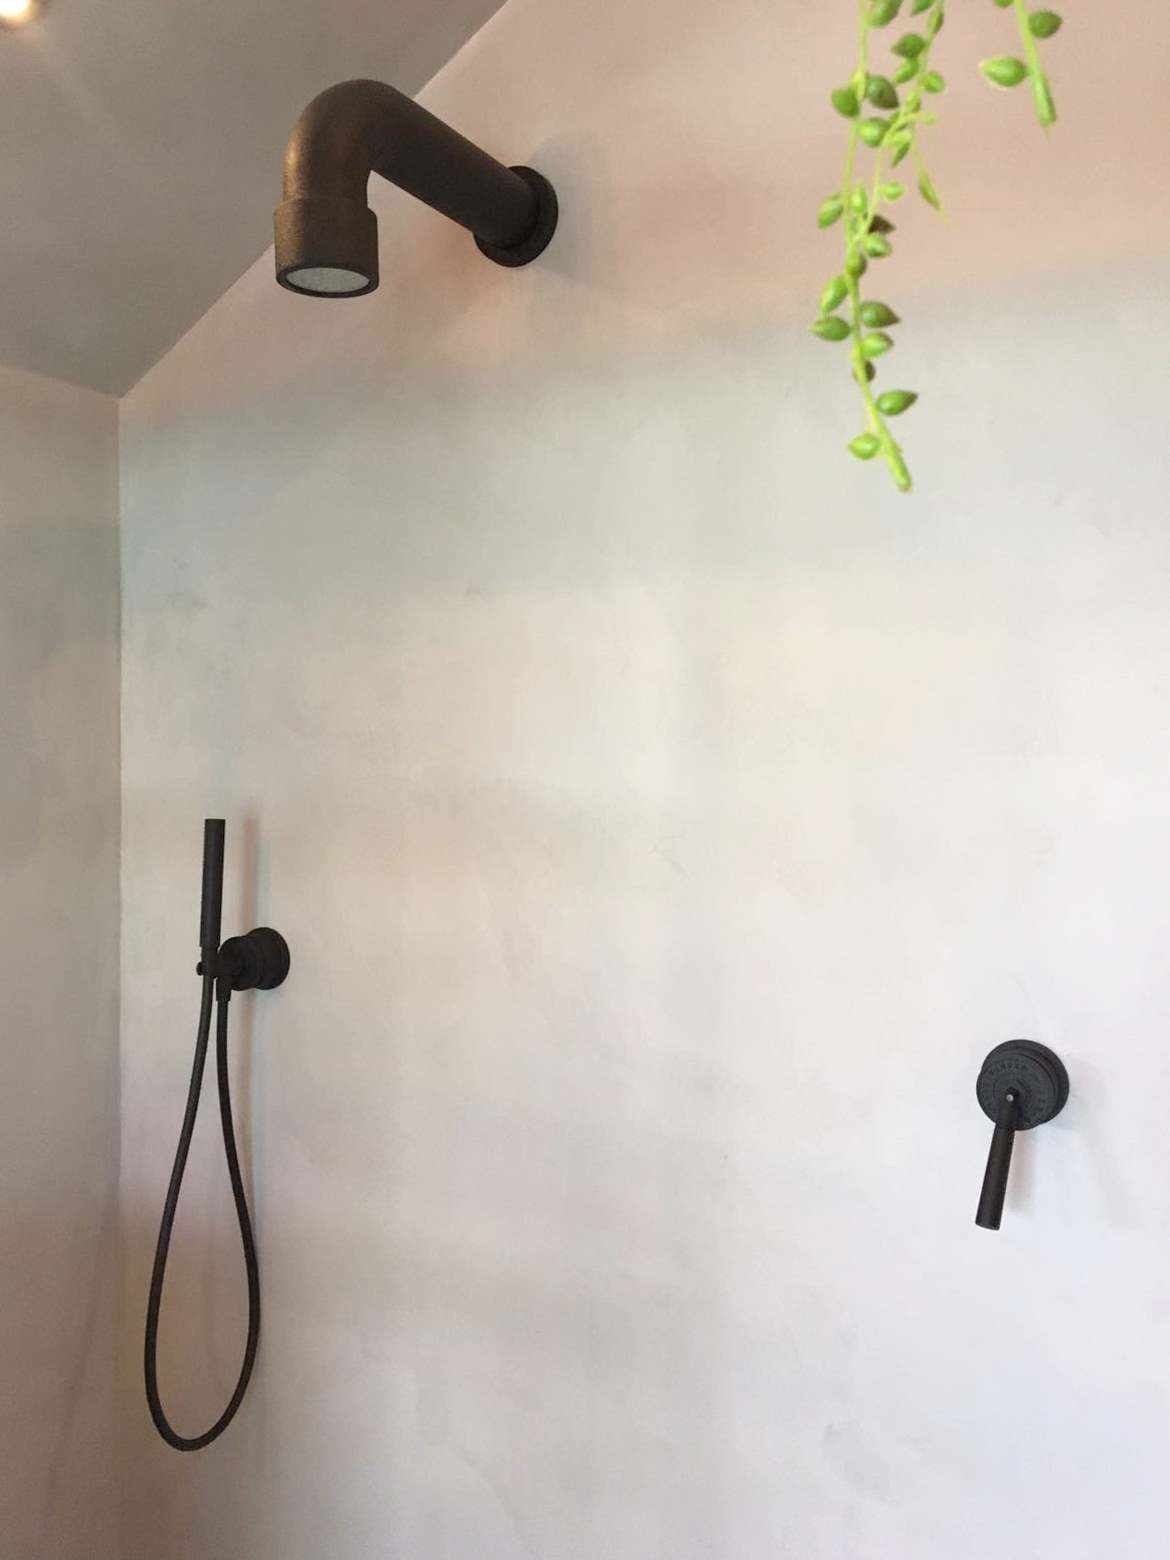 Mikrocement na ścianie prysznica w Holandii.